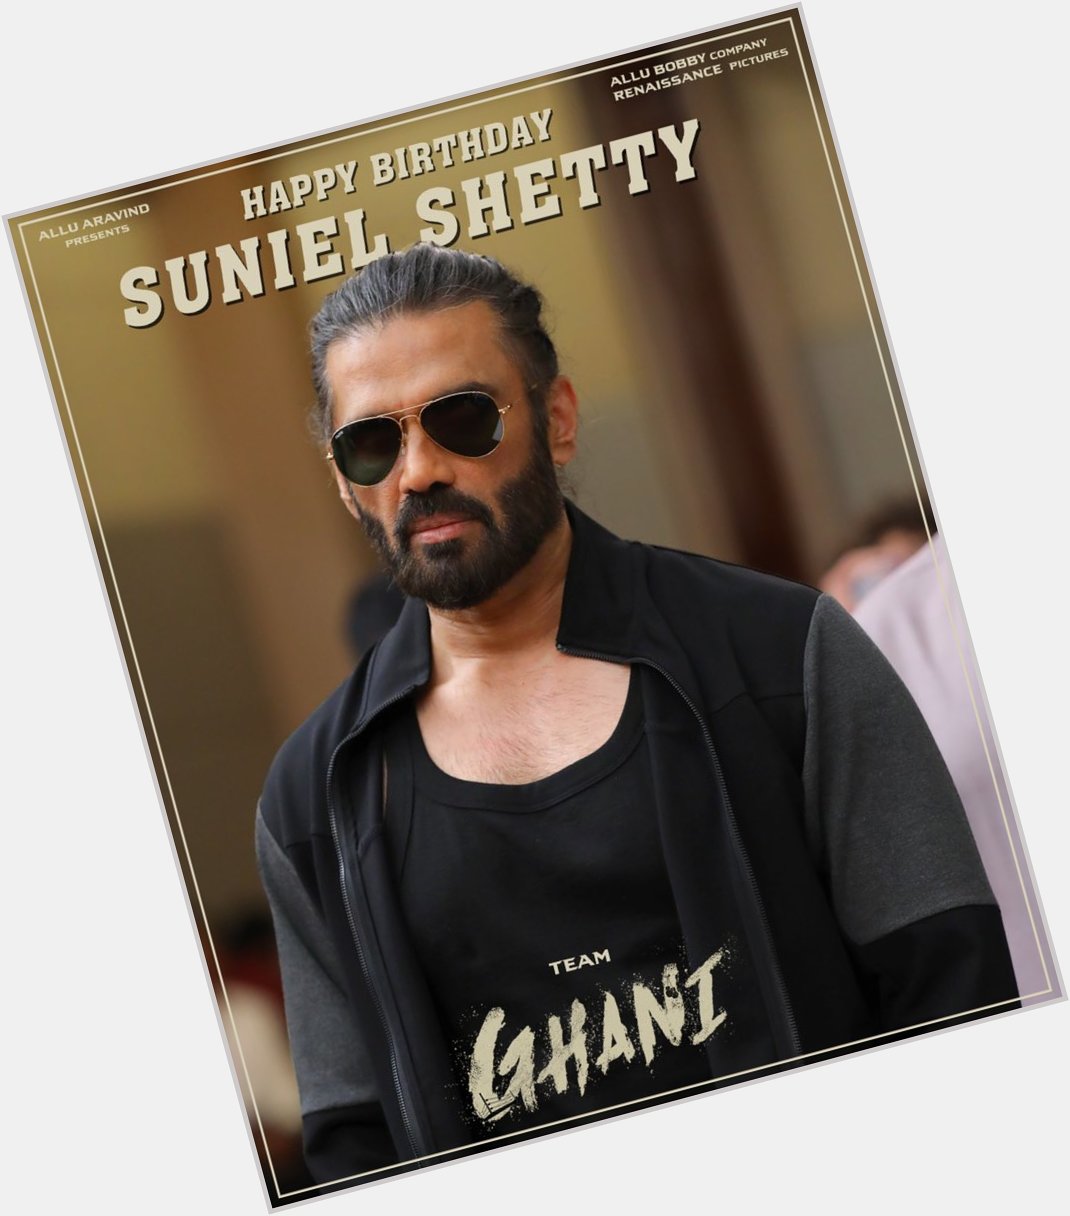   Happy Birthday Sunil Shetty  Team Ghani Varun Tej Konidela 